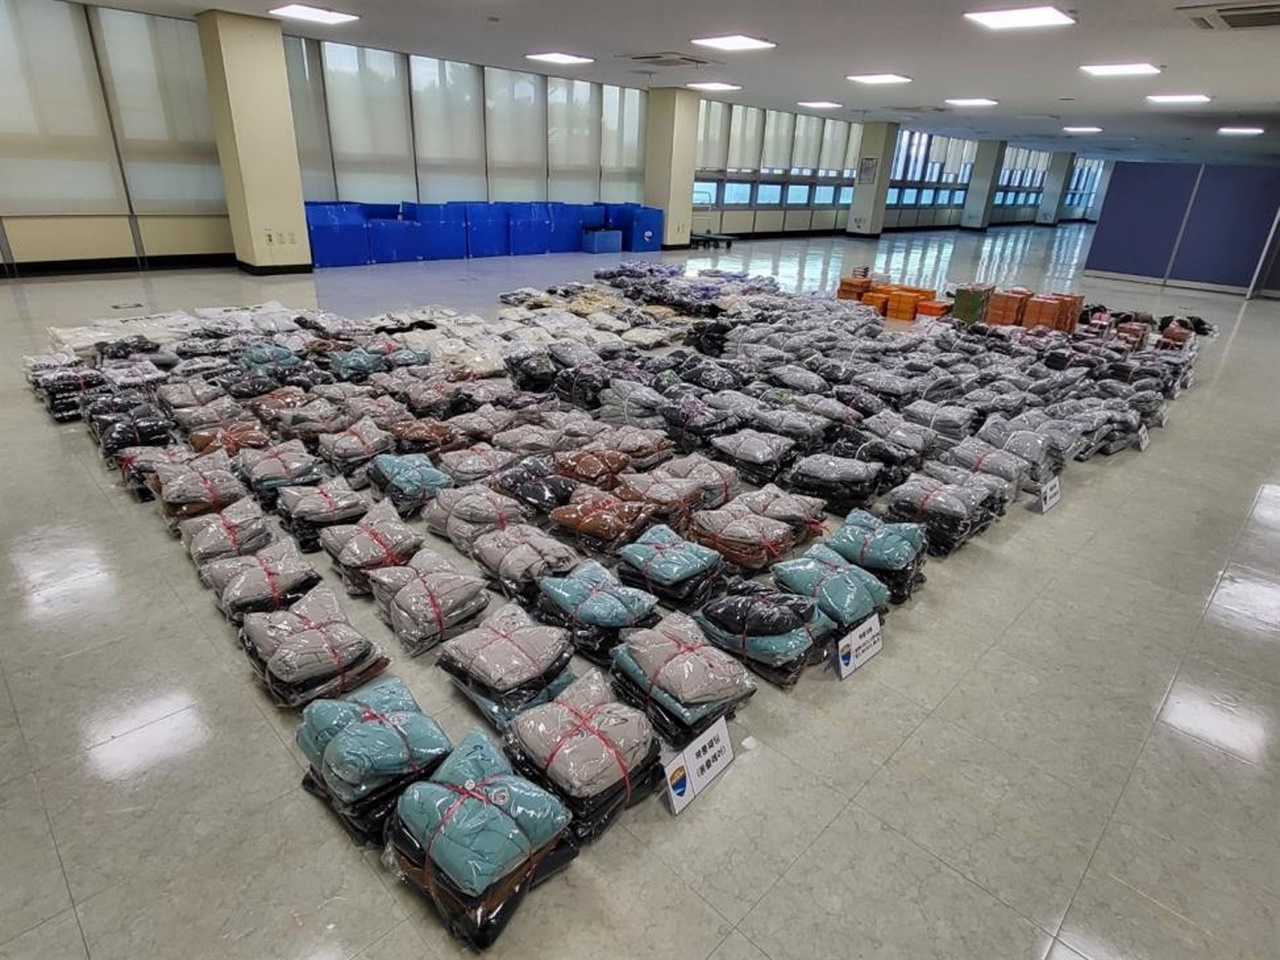 정품가 기준 18억 원 상당의 가짜 명품을 유통?보관하는 등 상표법을 위반한 11명이 경기도 공정특별사법경찰단에 검거됐다.